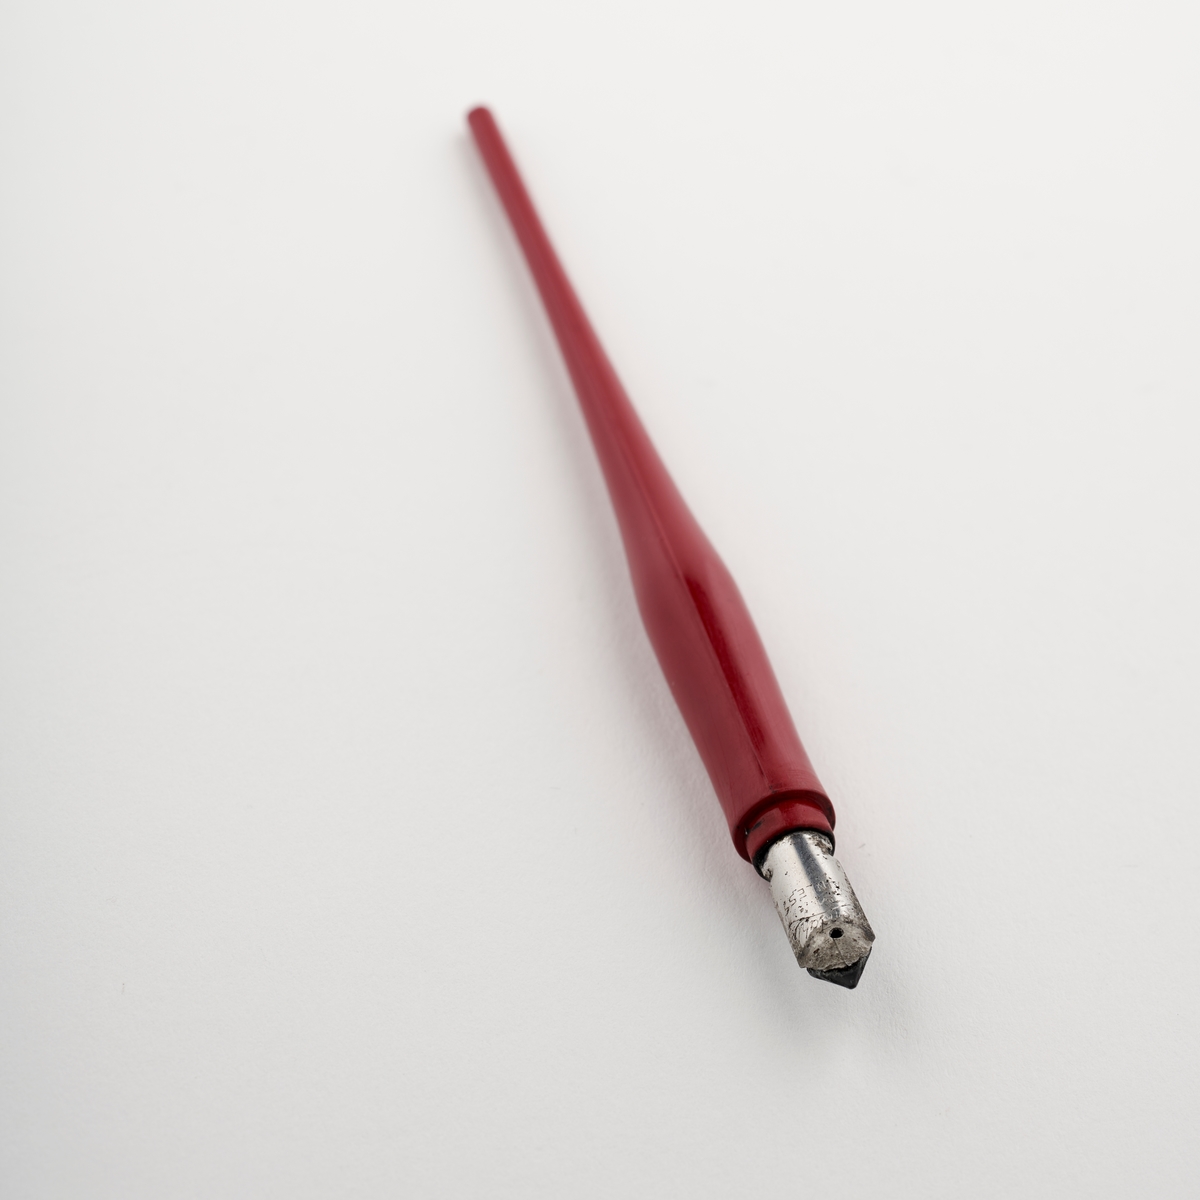 Fyllepenn med langt skaft til å holde i og en pennesplitt til å dyppe i blekk og skrive med.

NAV-samlingen er en gruppe av gjenstander som har vært anvendt på sosialkontoret (Aetat - NAV) i Skedsmo kommune.